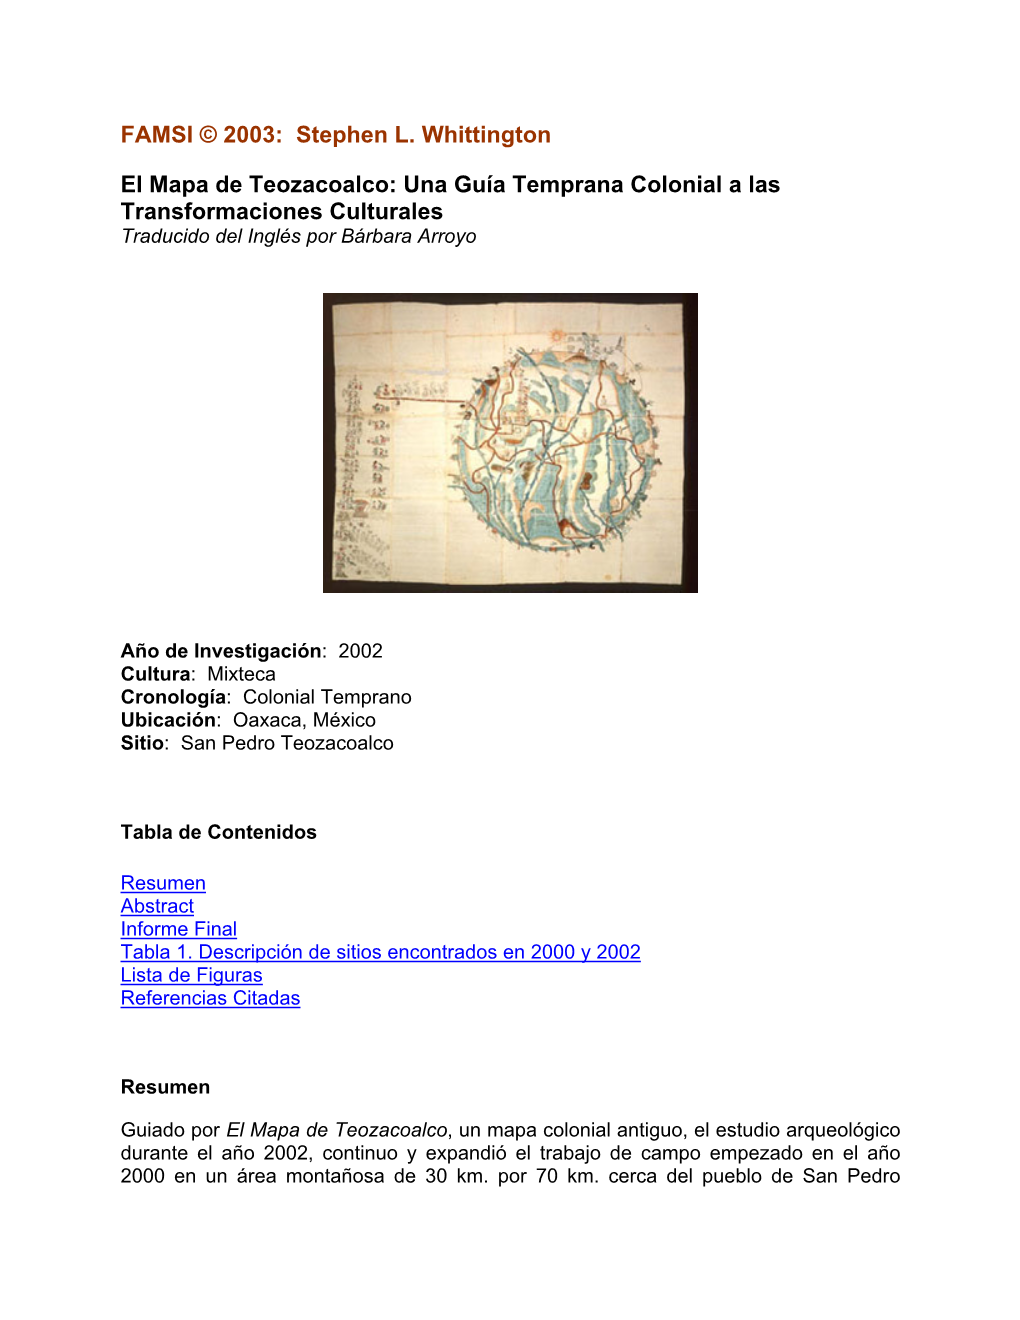 El Mapa De Teozacoalco: Una Guía Temprana Colonial a Las Transformaciones Culturales Traducido Del Inglés Por Bárbara Arroyo